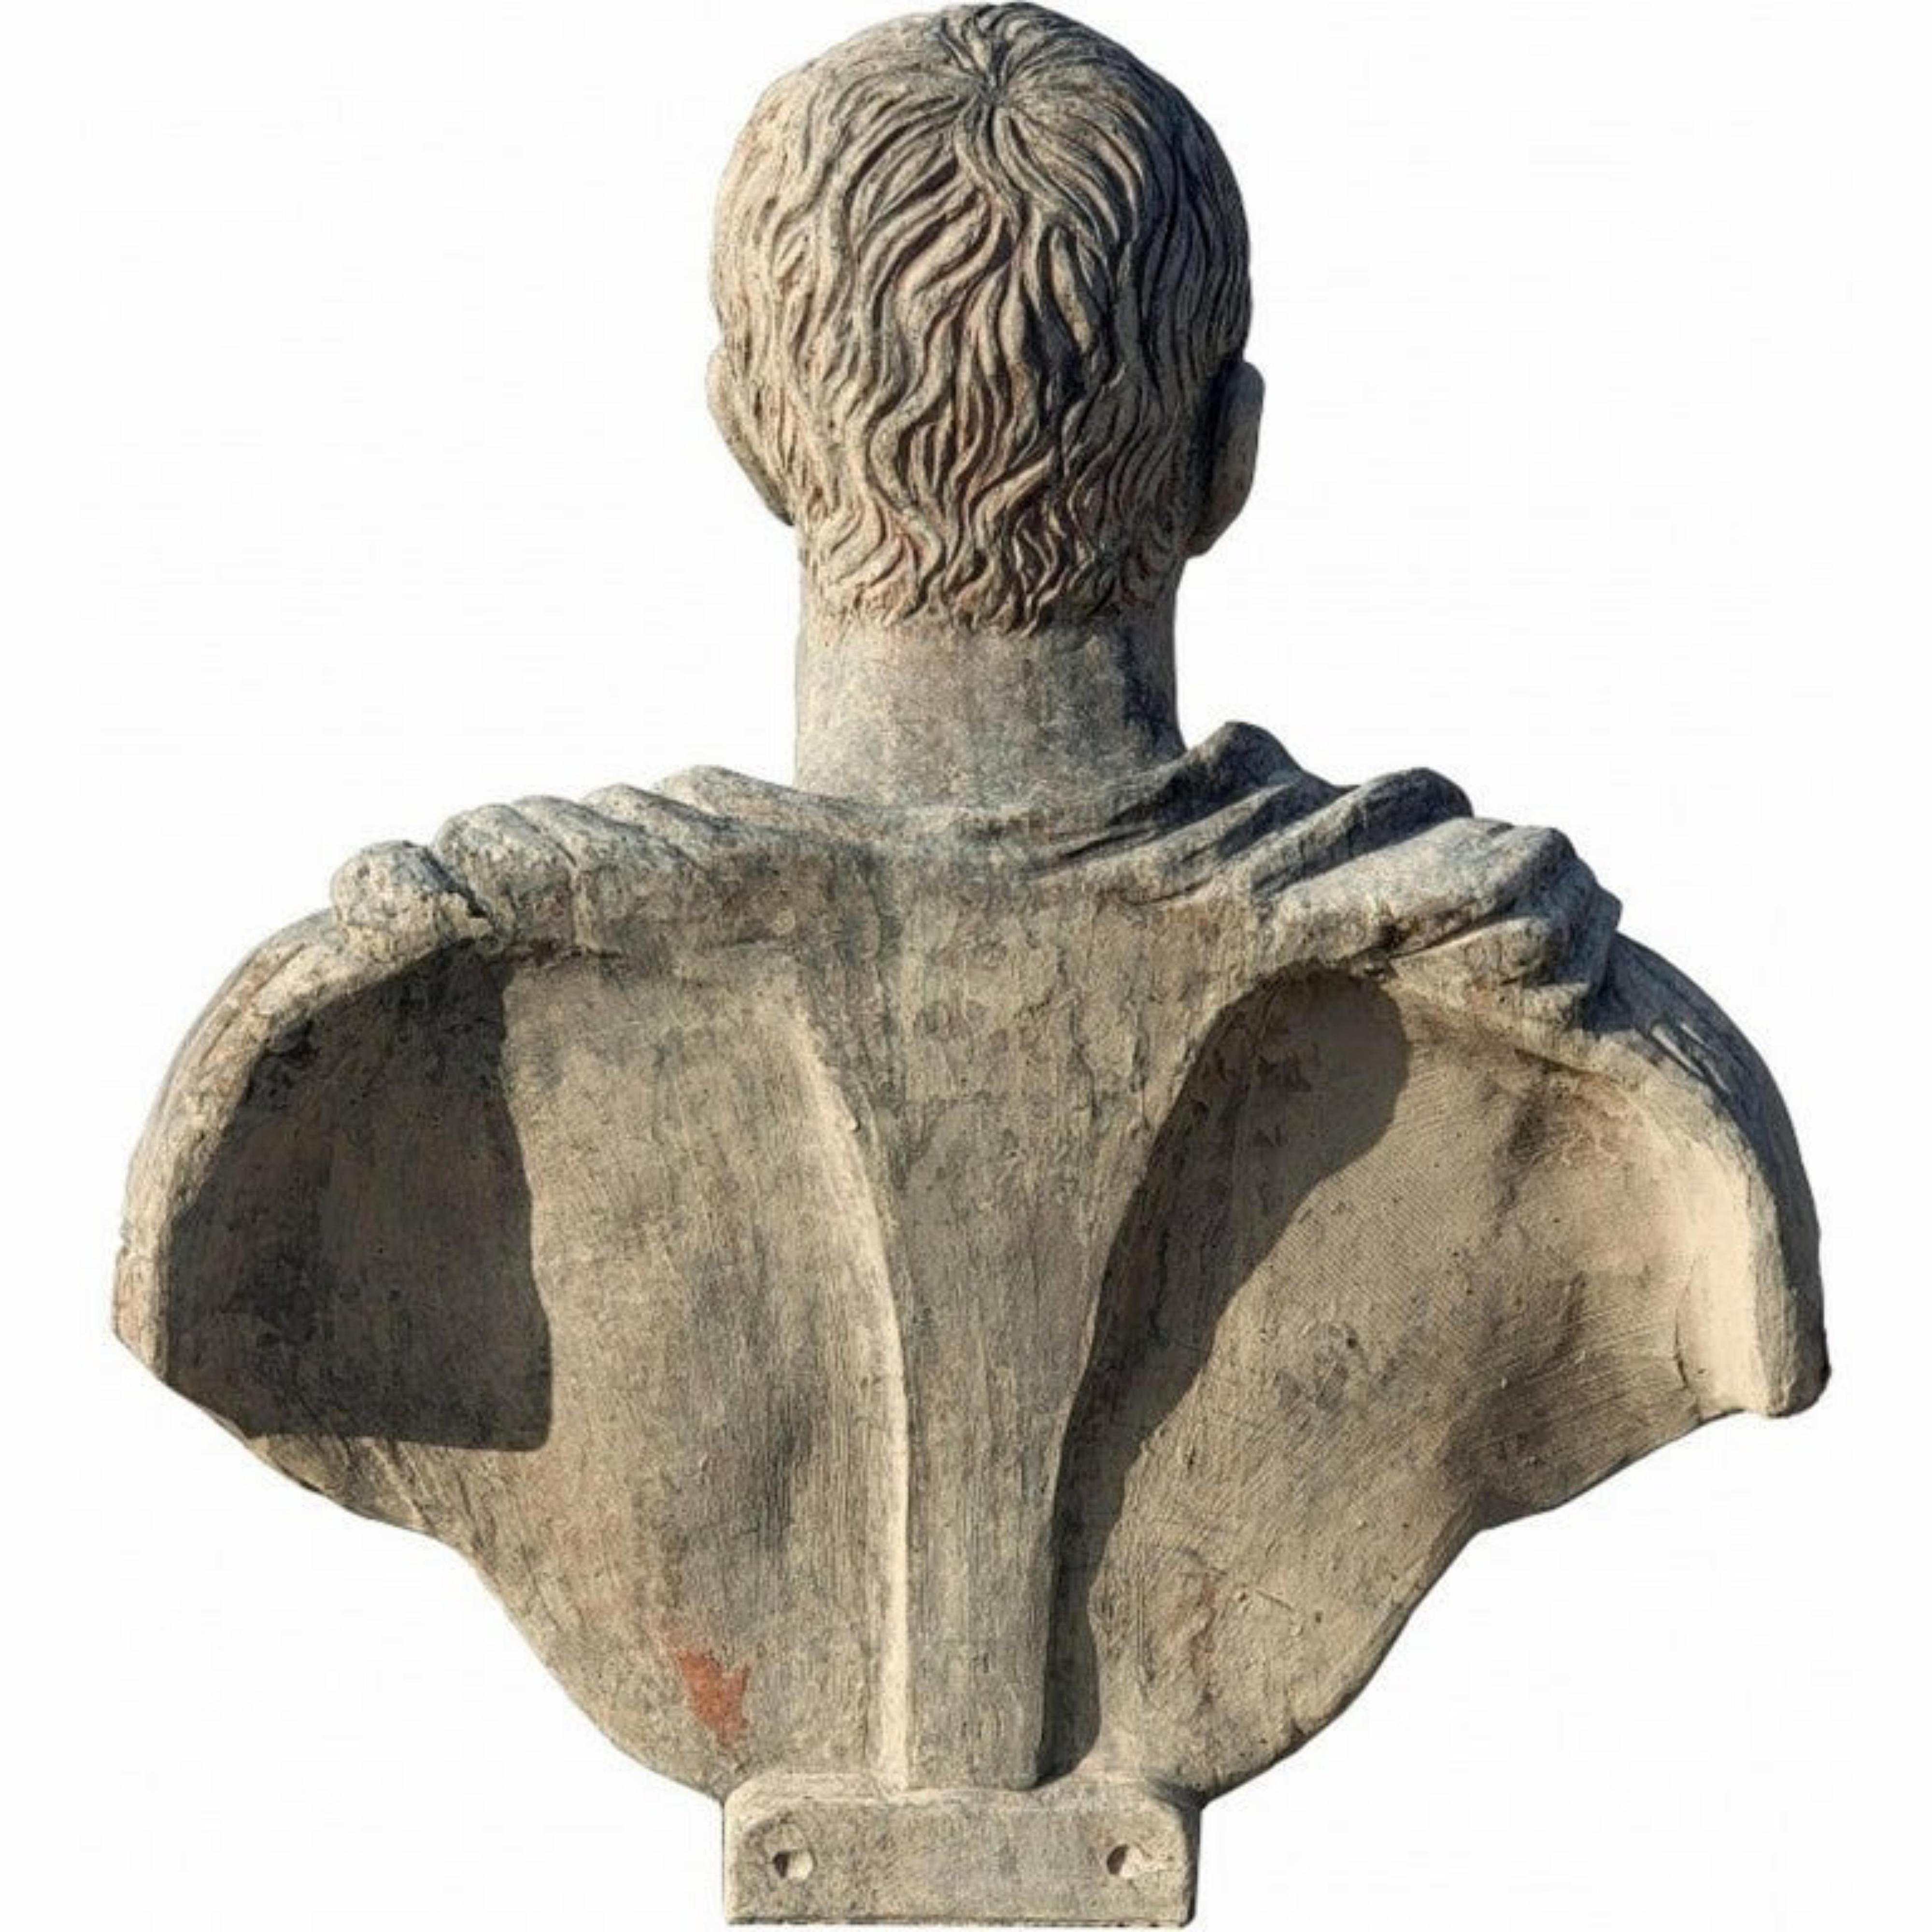 Jules César - Terre cuite - copie d'une statue romaine des Musées du Vatican
Début du 20e siècle
Buste en terre cuite de Jules César 50-30 av.
Ce buste est tiré du moulage original d'un buste des Musées du Vatican.
Gaius Julius Caesar était un